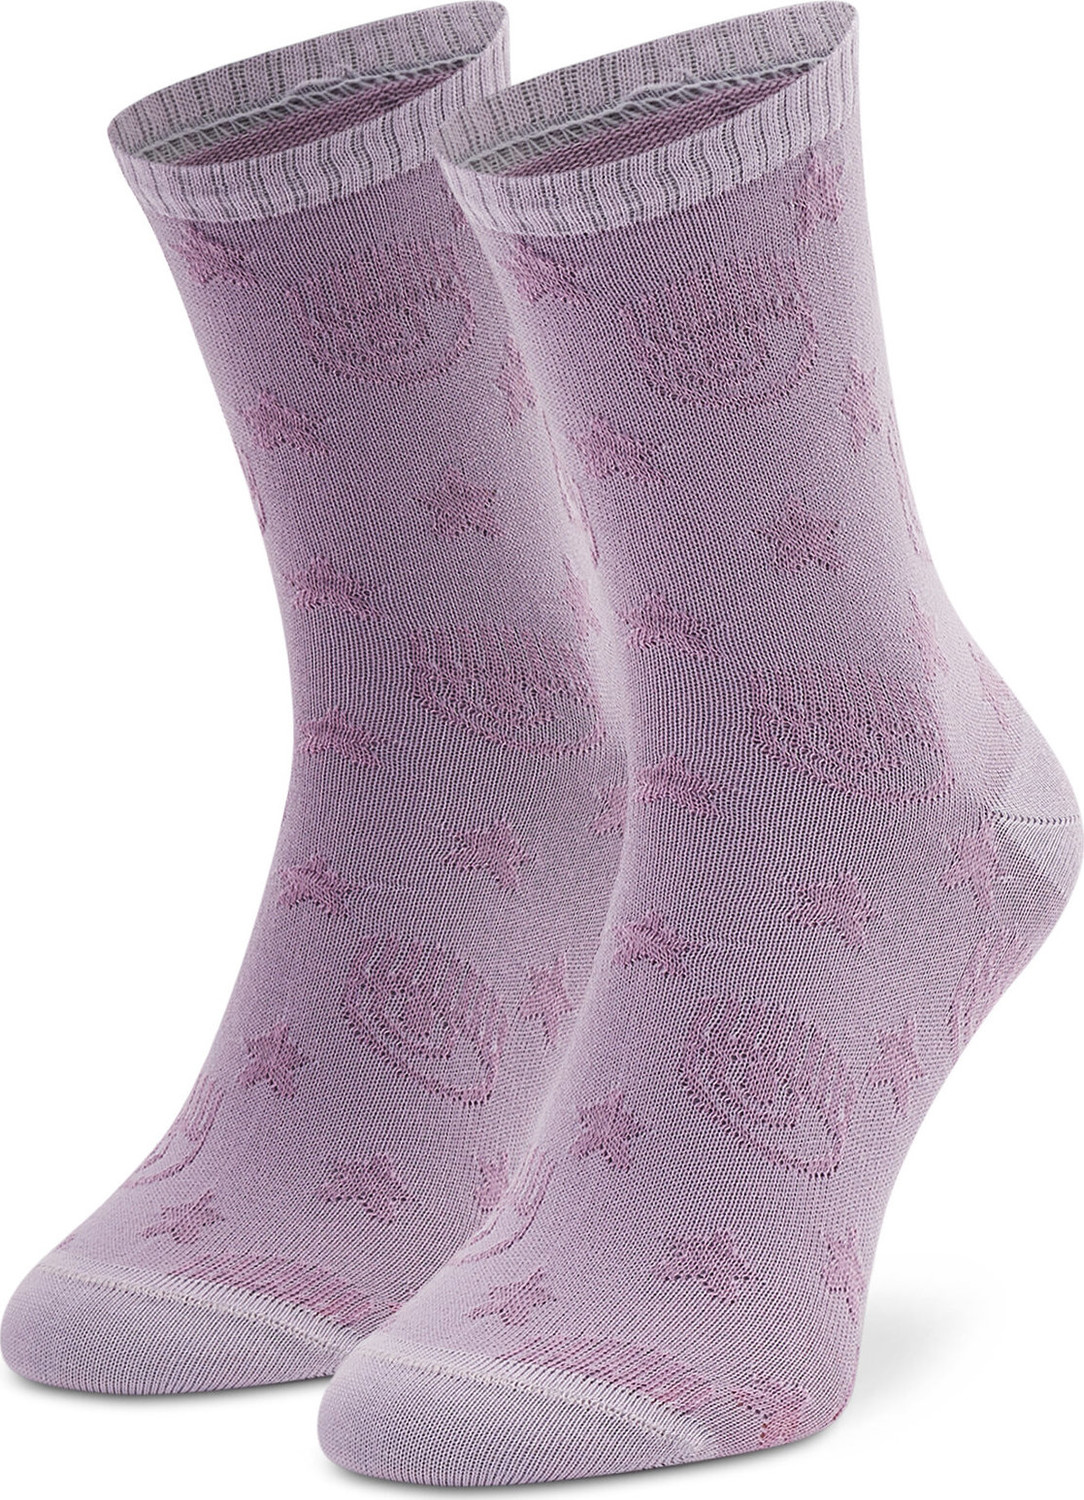 Dámské klasické ponožky Chiara Ferragni 73SB0J25 Violet Tulle 303